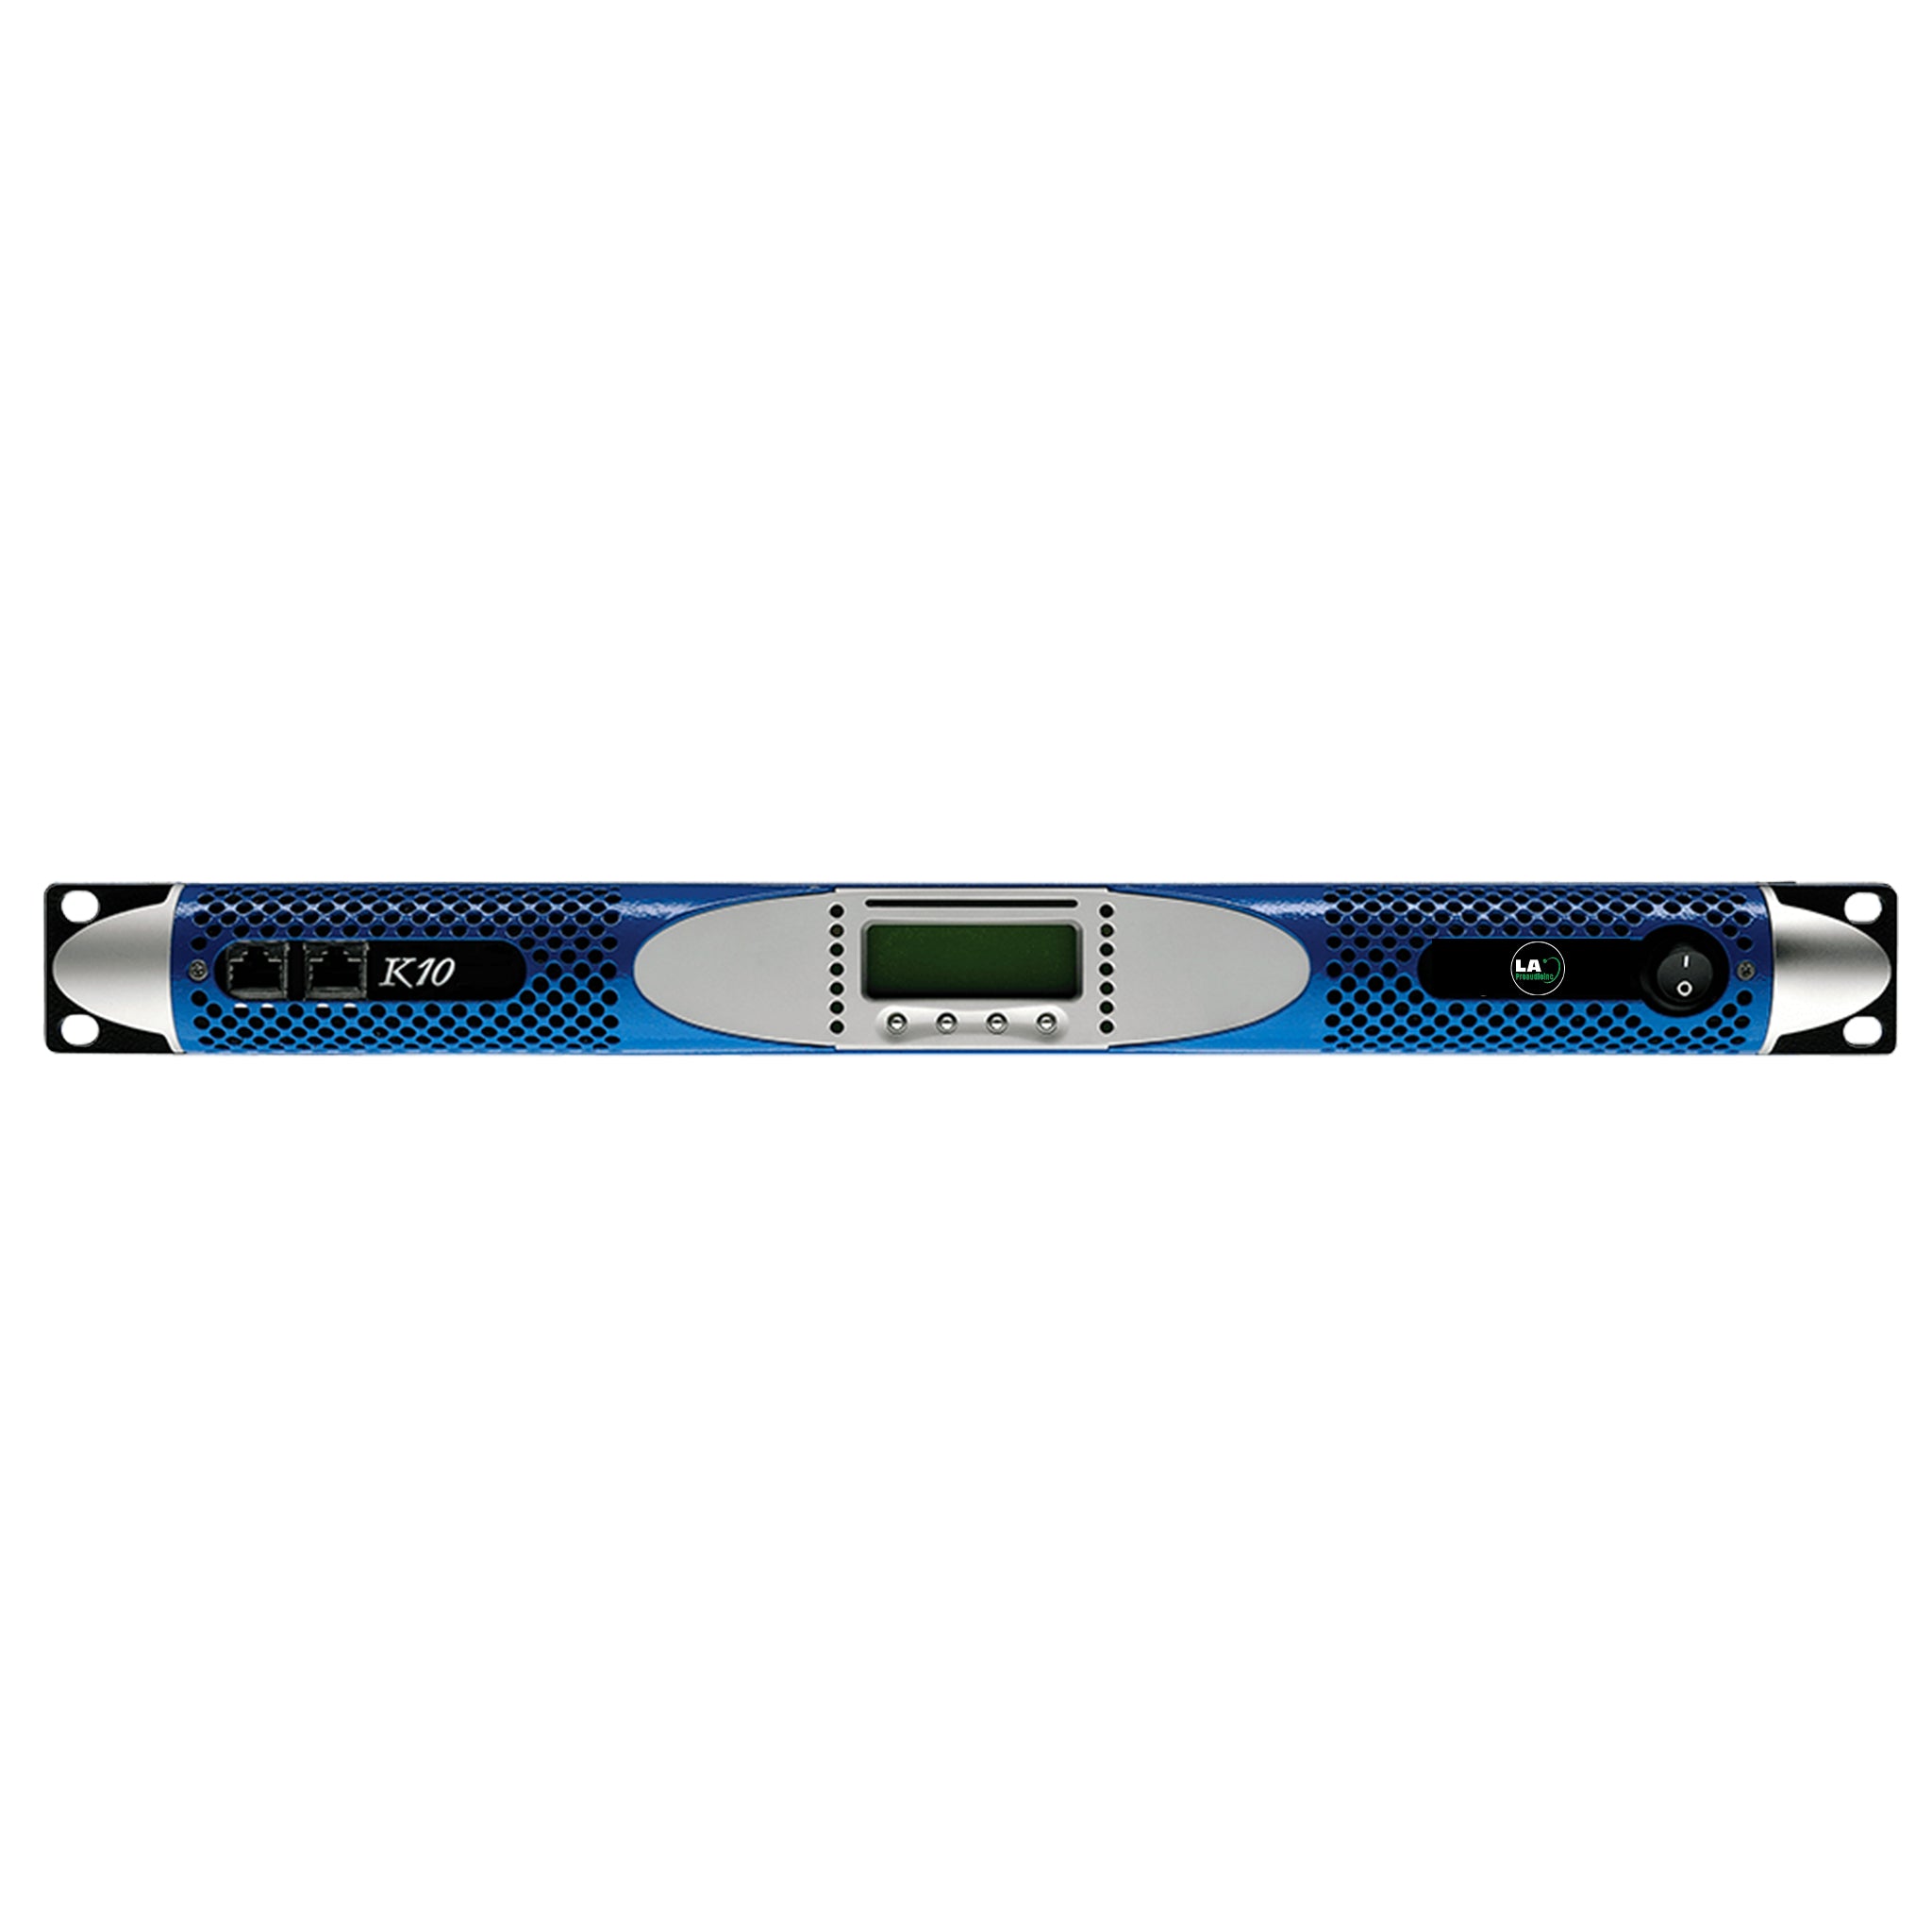 LAK10 Dual Channel Digital Amplifier